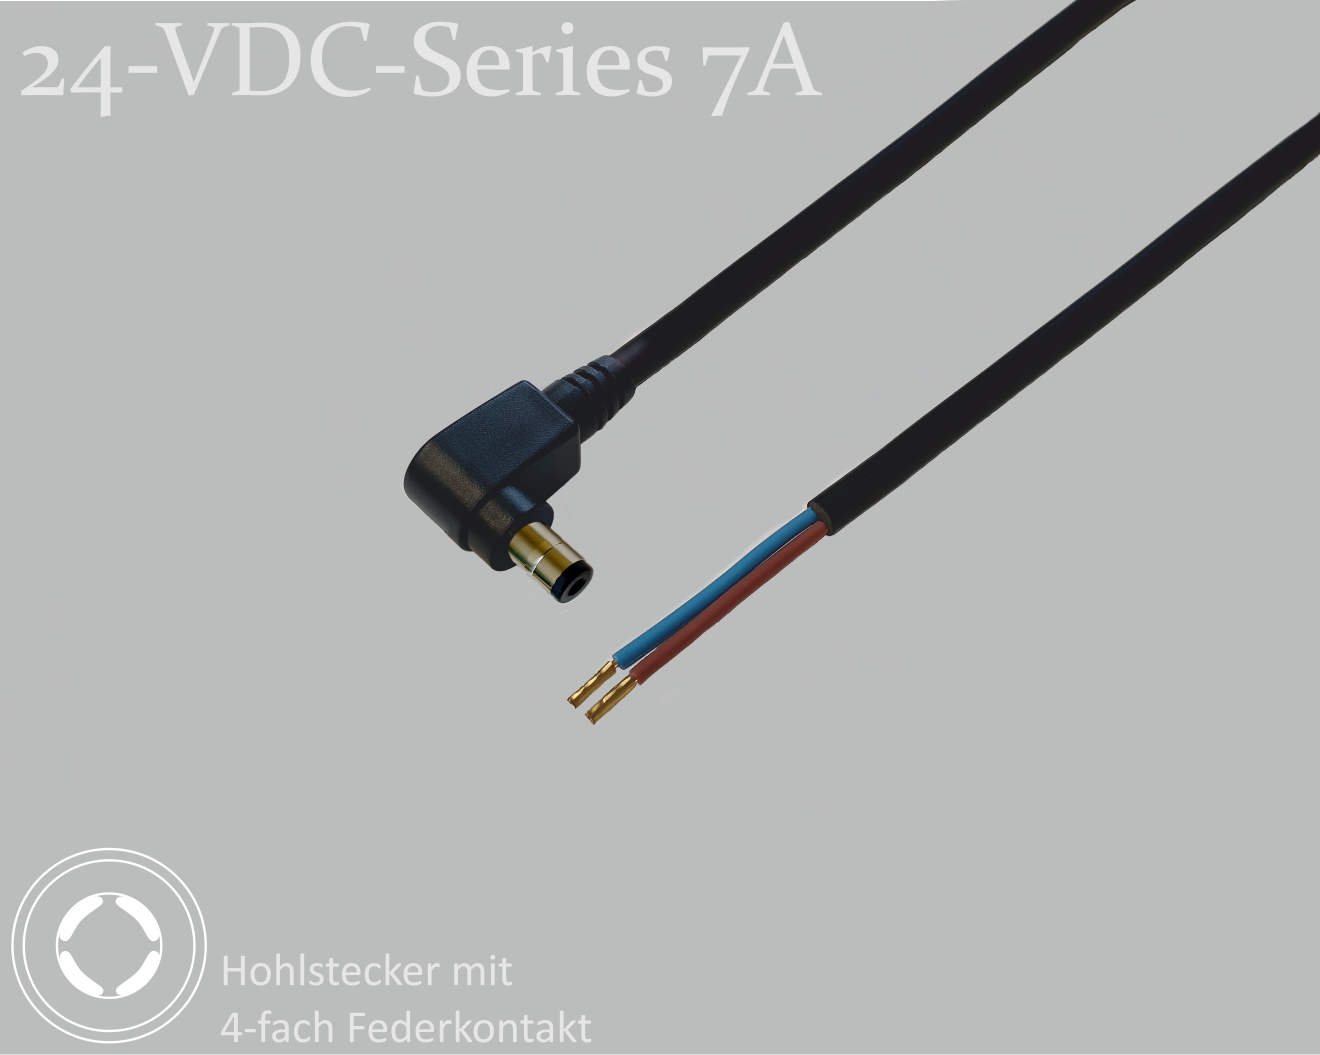 24-VDC-Series 7A, DC-Anschlusskabel, DC-Winkelstecker mit 4-Federkontakt 2,1x5,5x9,5mm, Rundkabel 2x0,50mm², schwarz, Aderendhülsen, 0,75m